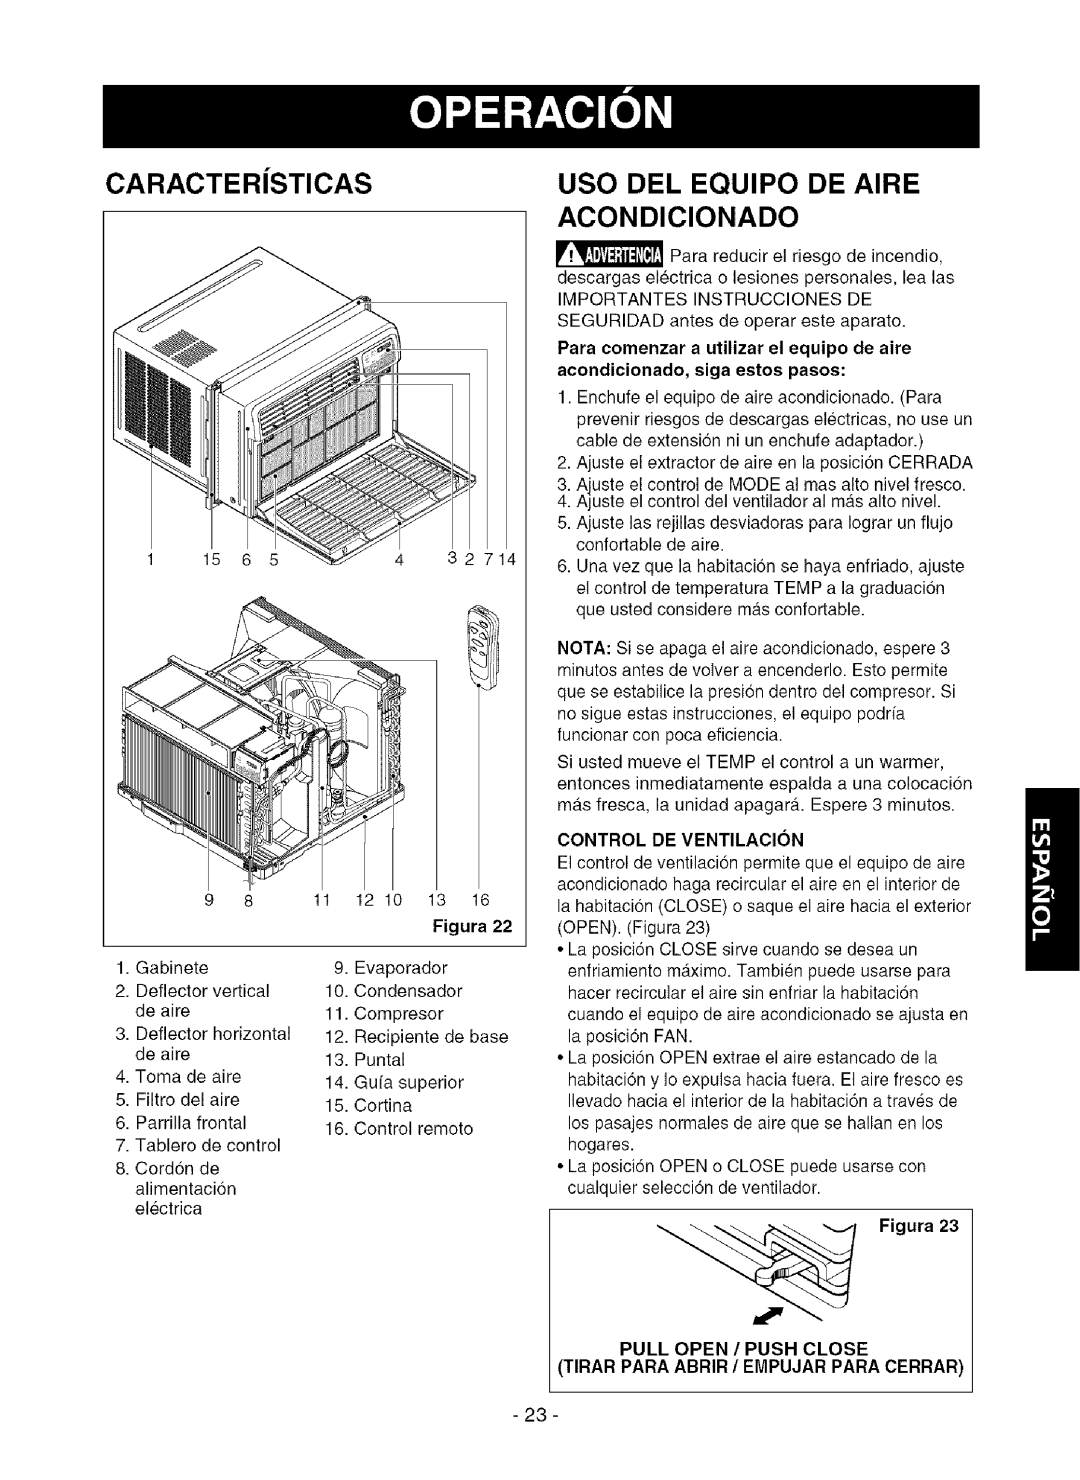 Kenmore 580.75281 owner manual Caracter Sticas, USO DEL EQUlPO DE AIRE ACONDIClONADO, Figura, Control De Ventilacion 